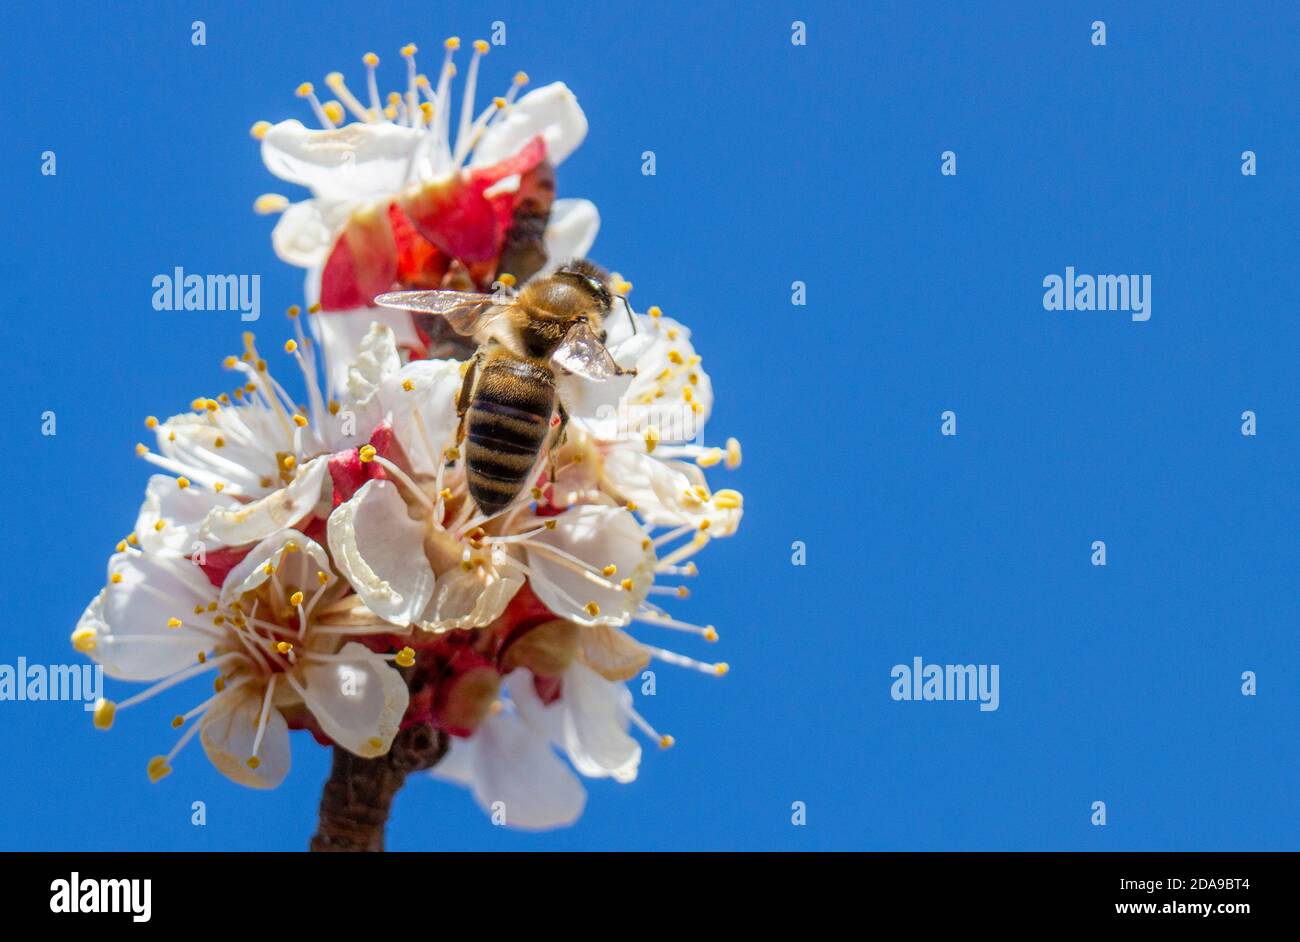 Die Biene bestäubt die Aprikosenblüte und verbreitet den Monilia-Pilz von Insekten, einschließlich Bienen. Das Problem der Infektion mit Pilzerkrankungen. Stockfoto